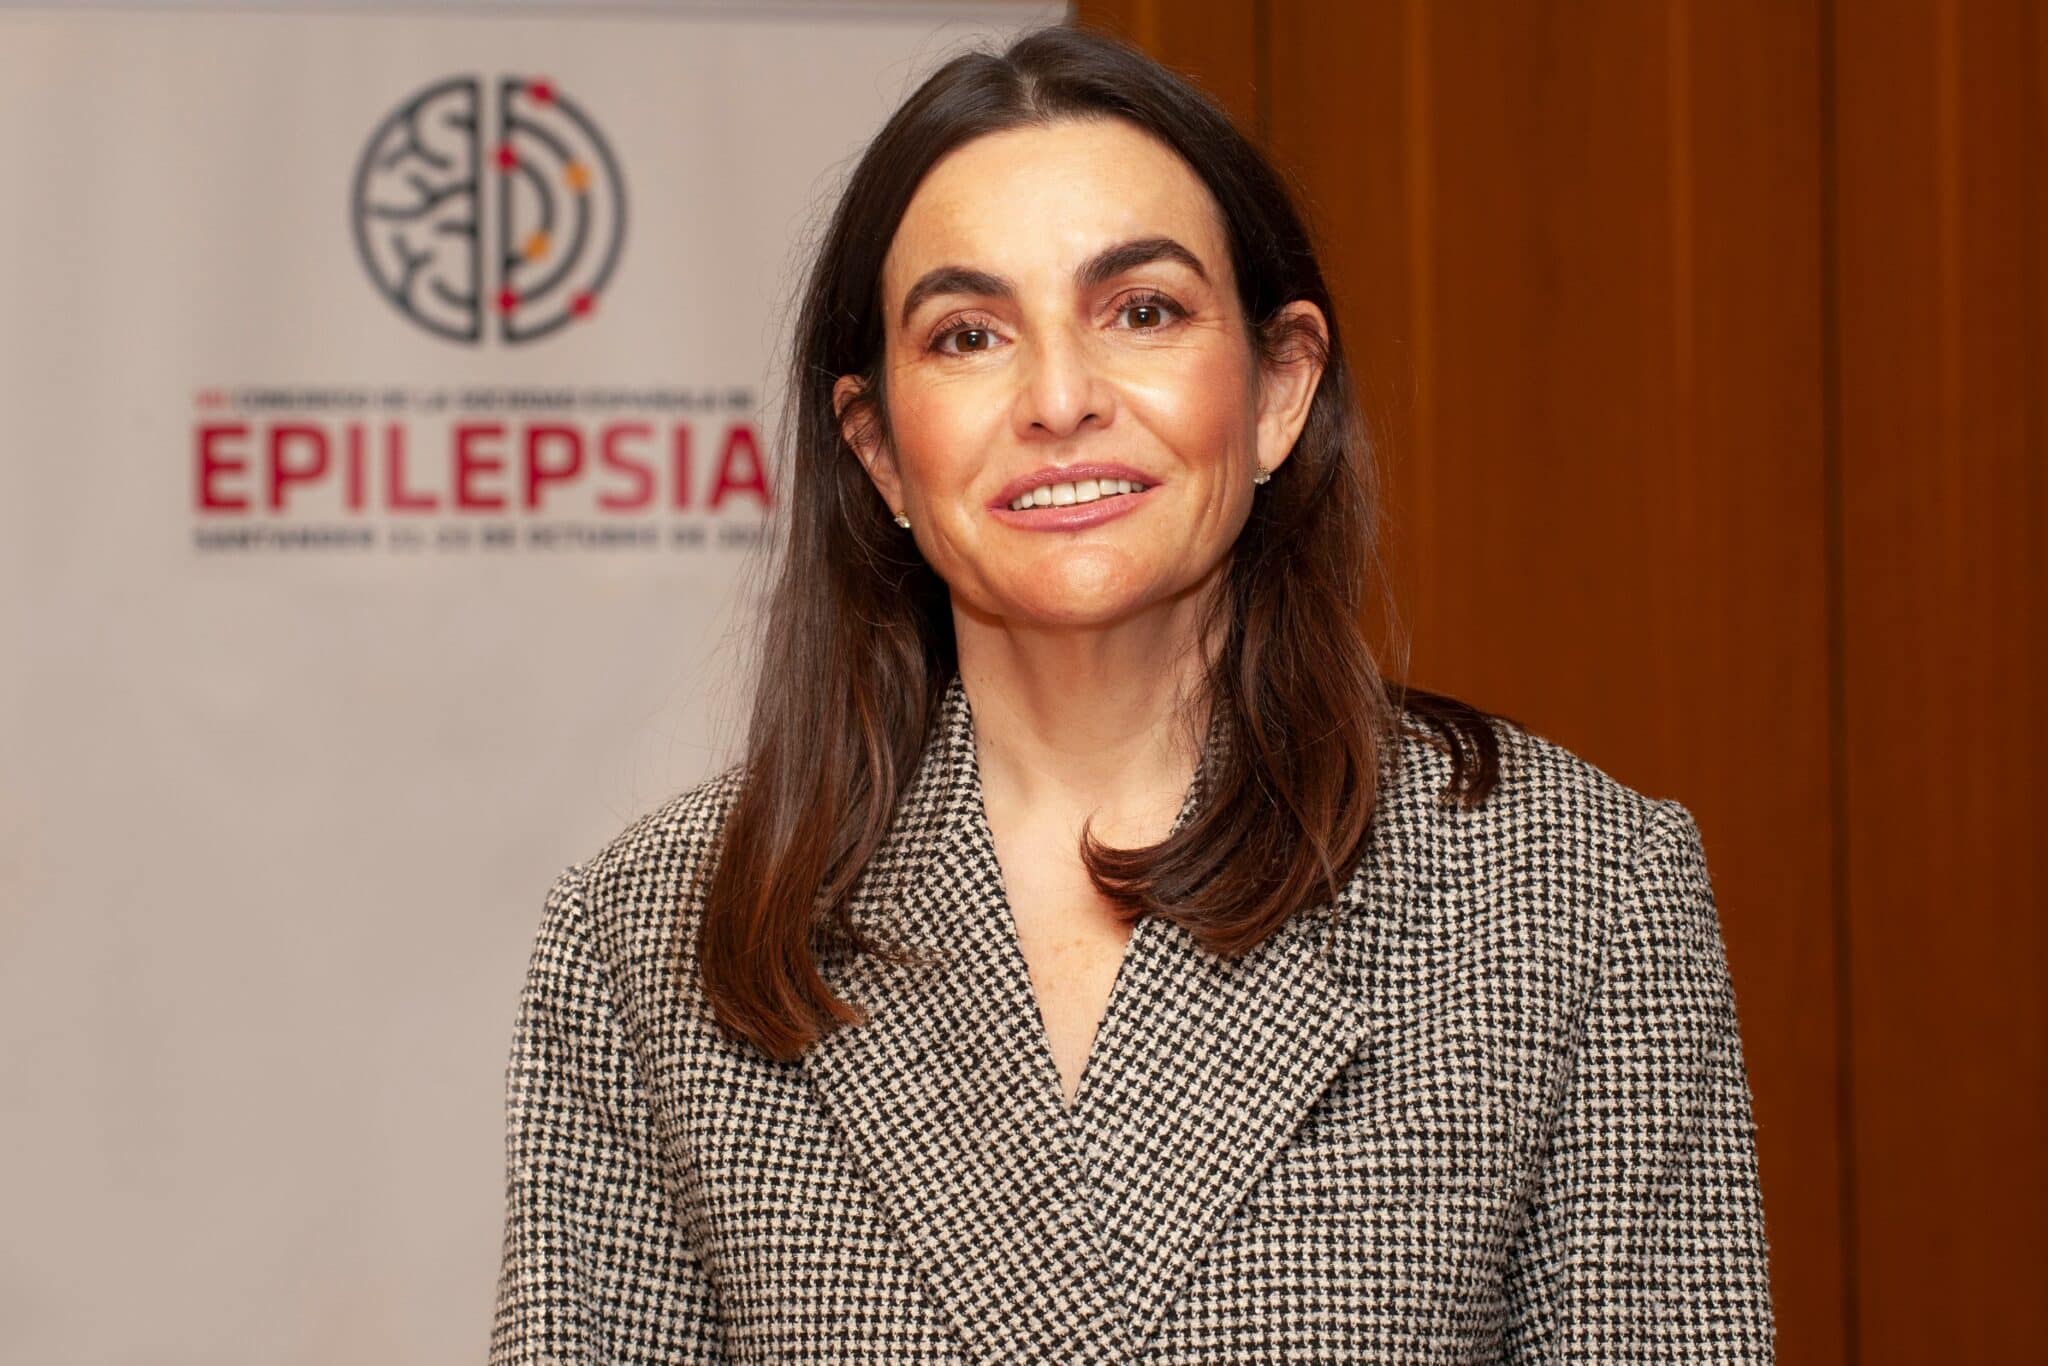 La presidenta de la Sociedad Española de Epilepsia (SEEP), María del Mar Carreño, afirma, en una entrevista